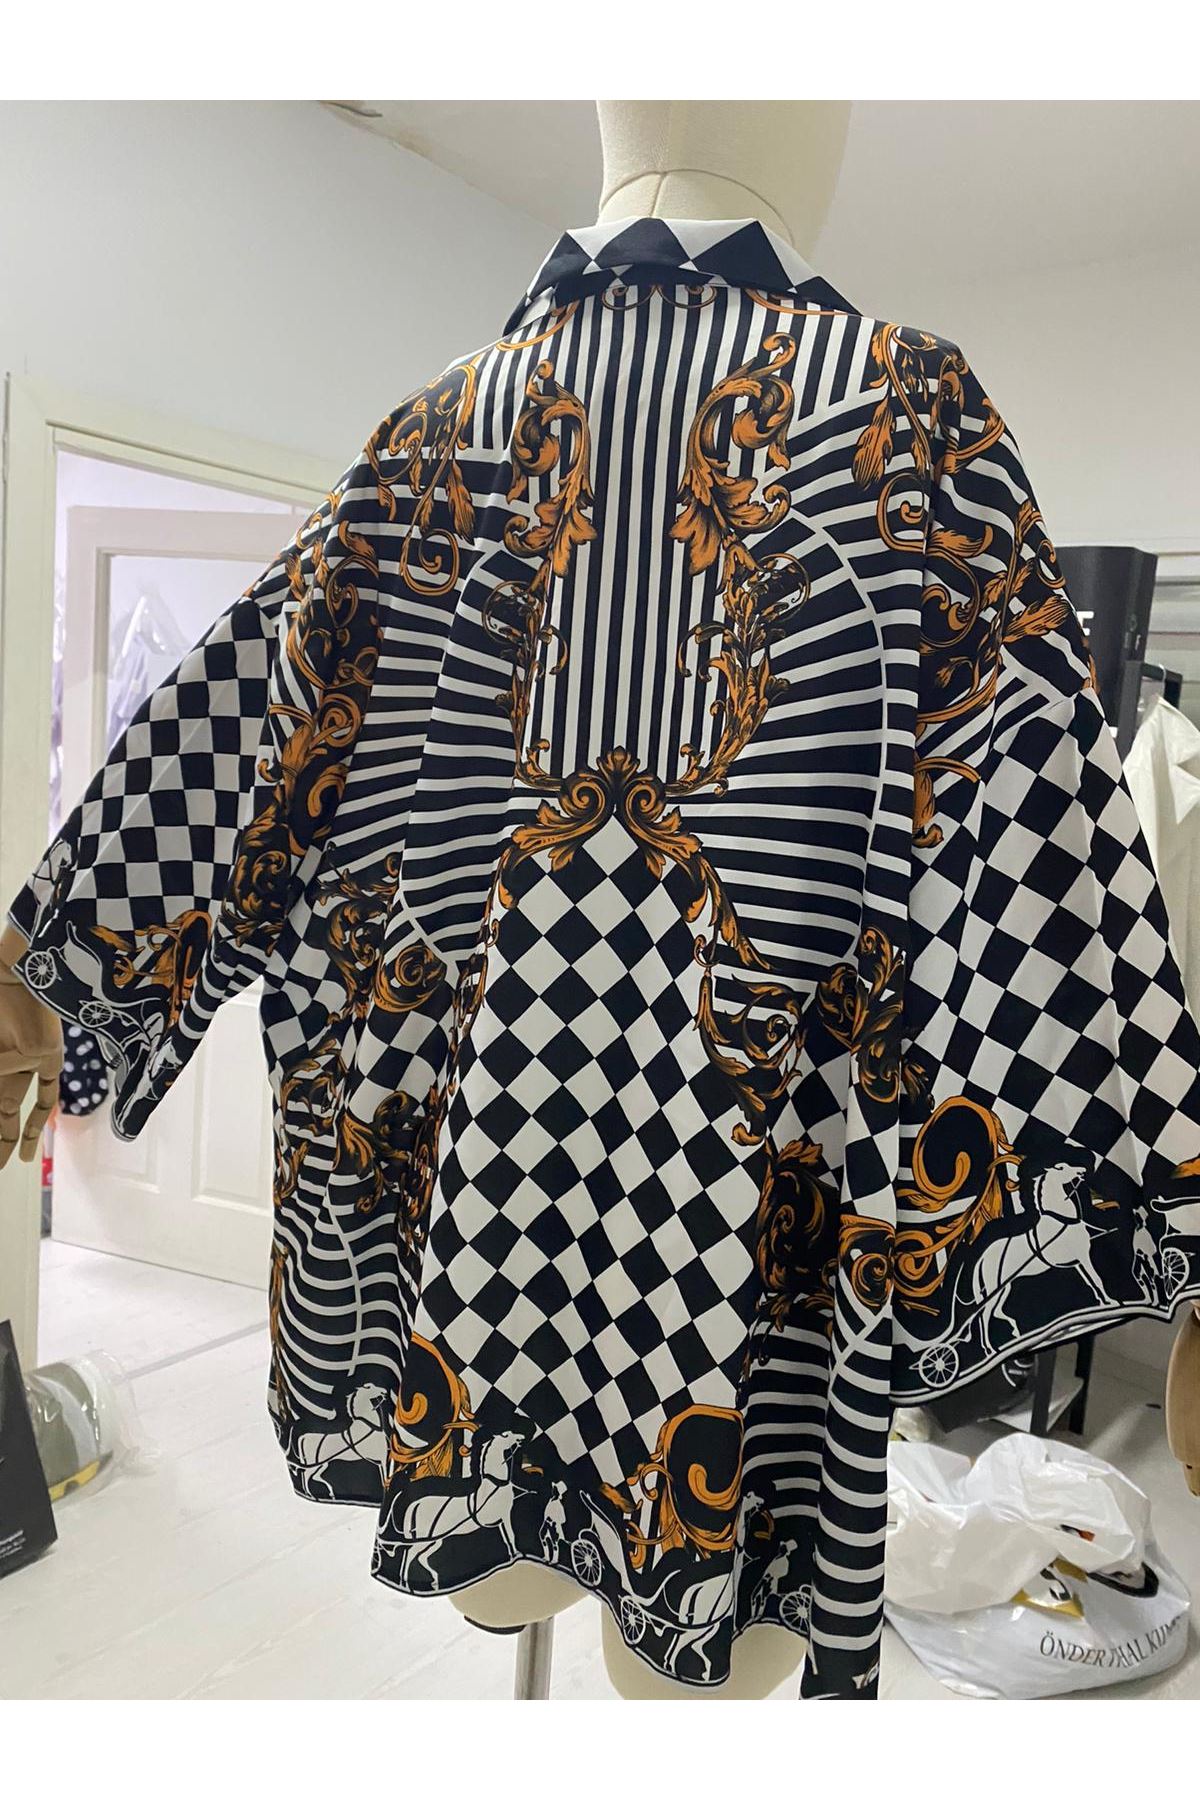 Siyah Beyaz damalı unisex gömlek kimono canlı yaşayan ve hissedenler için GÖMLEK